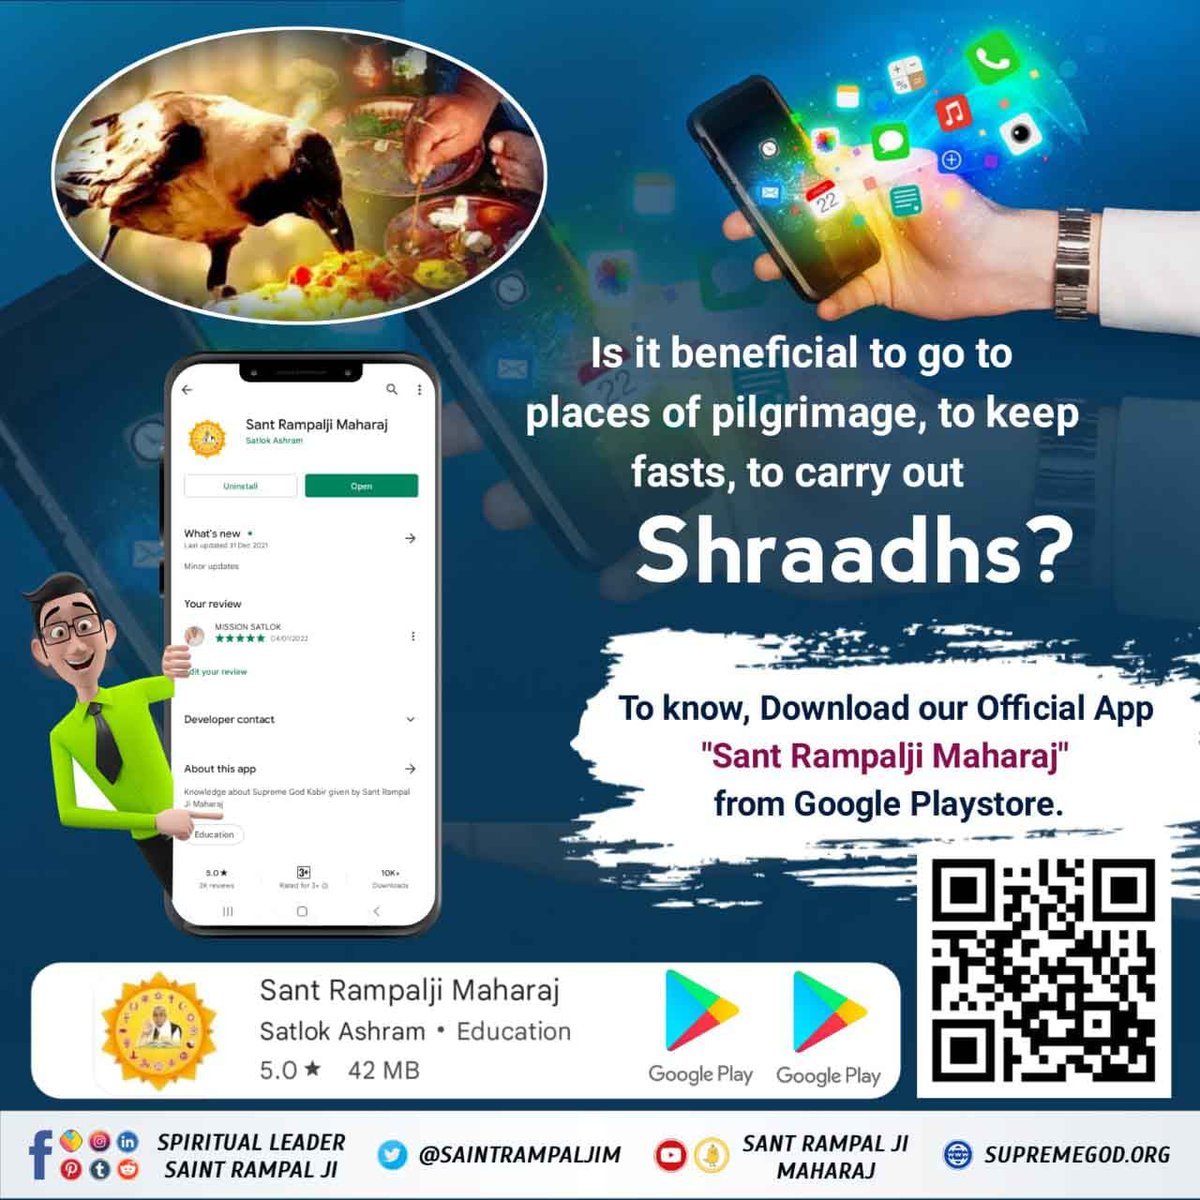 #Sant_Rampalji_Maharaj_App
🍃🔥🍃🔥🍃🔥🍃
🎉फ्री आध्यात्मिक पुस्तकें प्राप्त करने के लिए आज ही Download करें Official App 'Sant Rampalji Maharaj' Google Playstore से।
🌿👉Must watch  popcorn movies TV  7:30 pm

#App #socialmedia #indianapp #